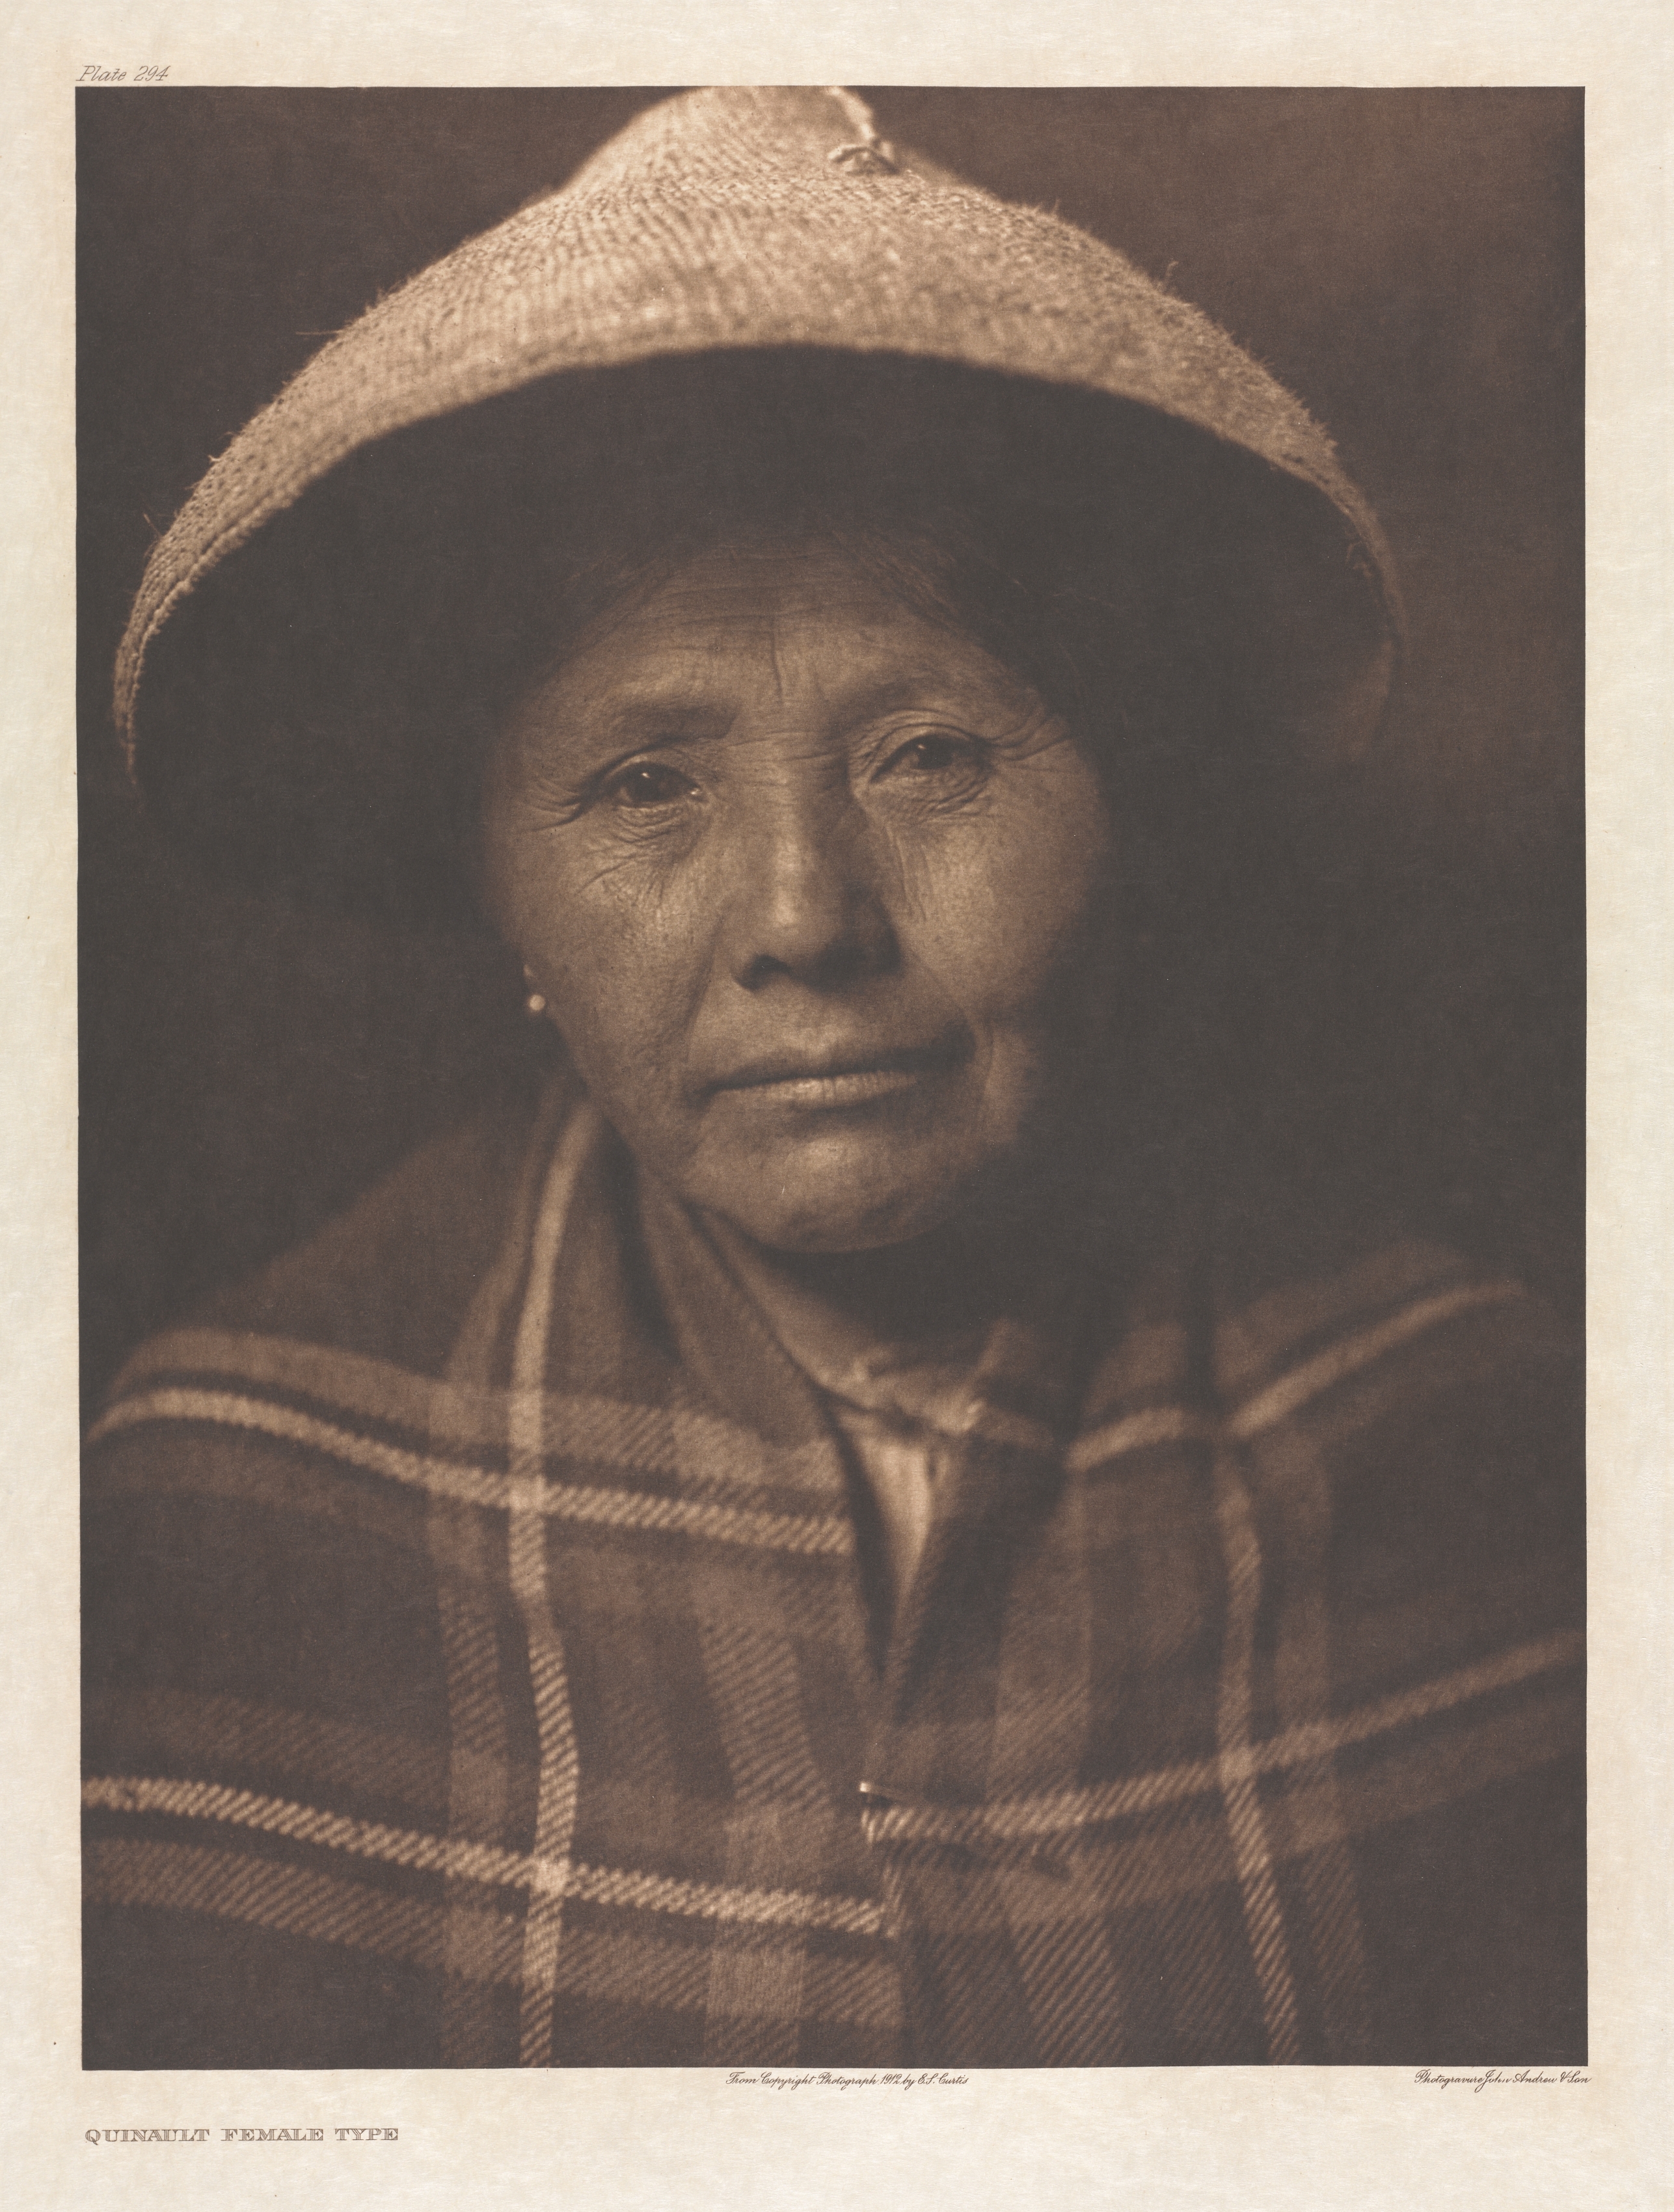 Portfolio IX, Plate 294: Quinault Female Type